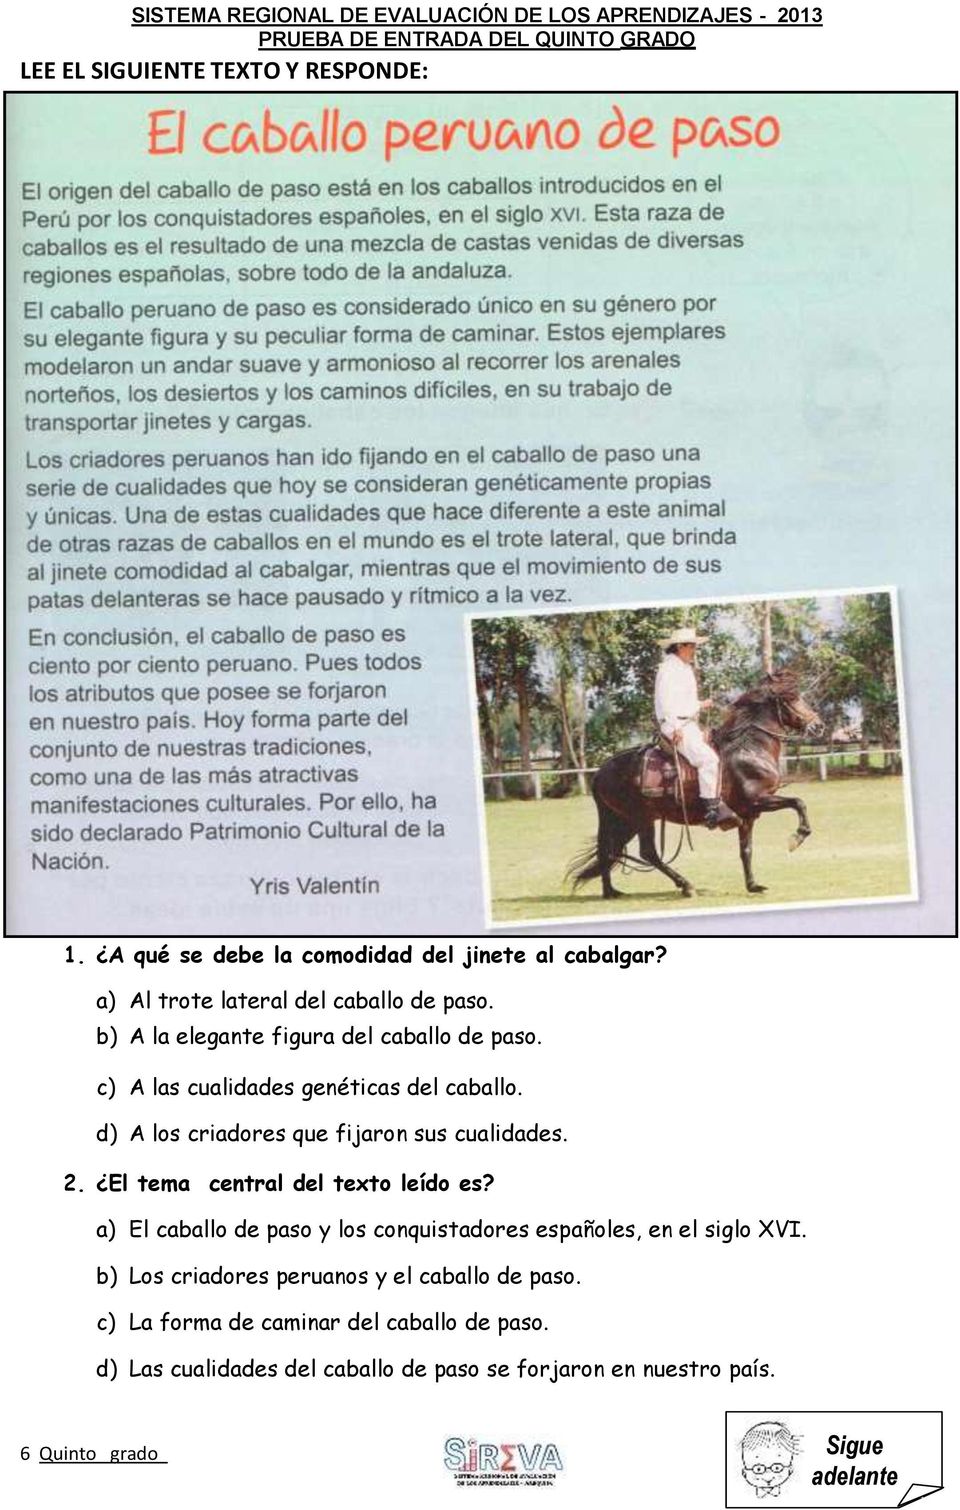 El tema central del texto leído es? a) El caballo de paso y los conquistadores españoles, en el siglo XVI.